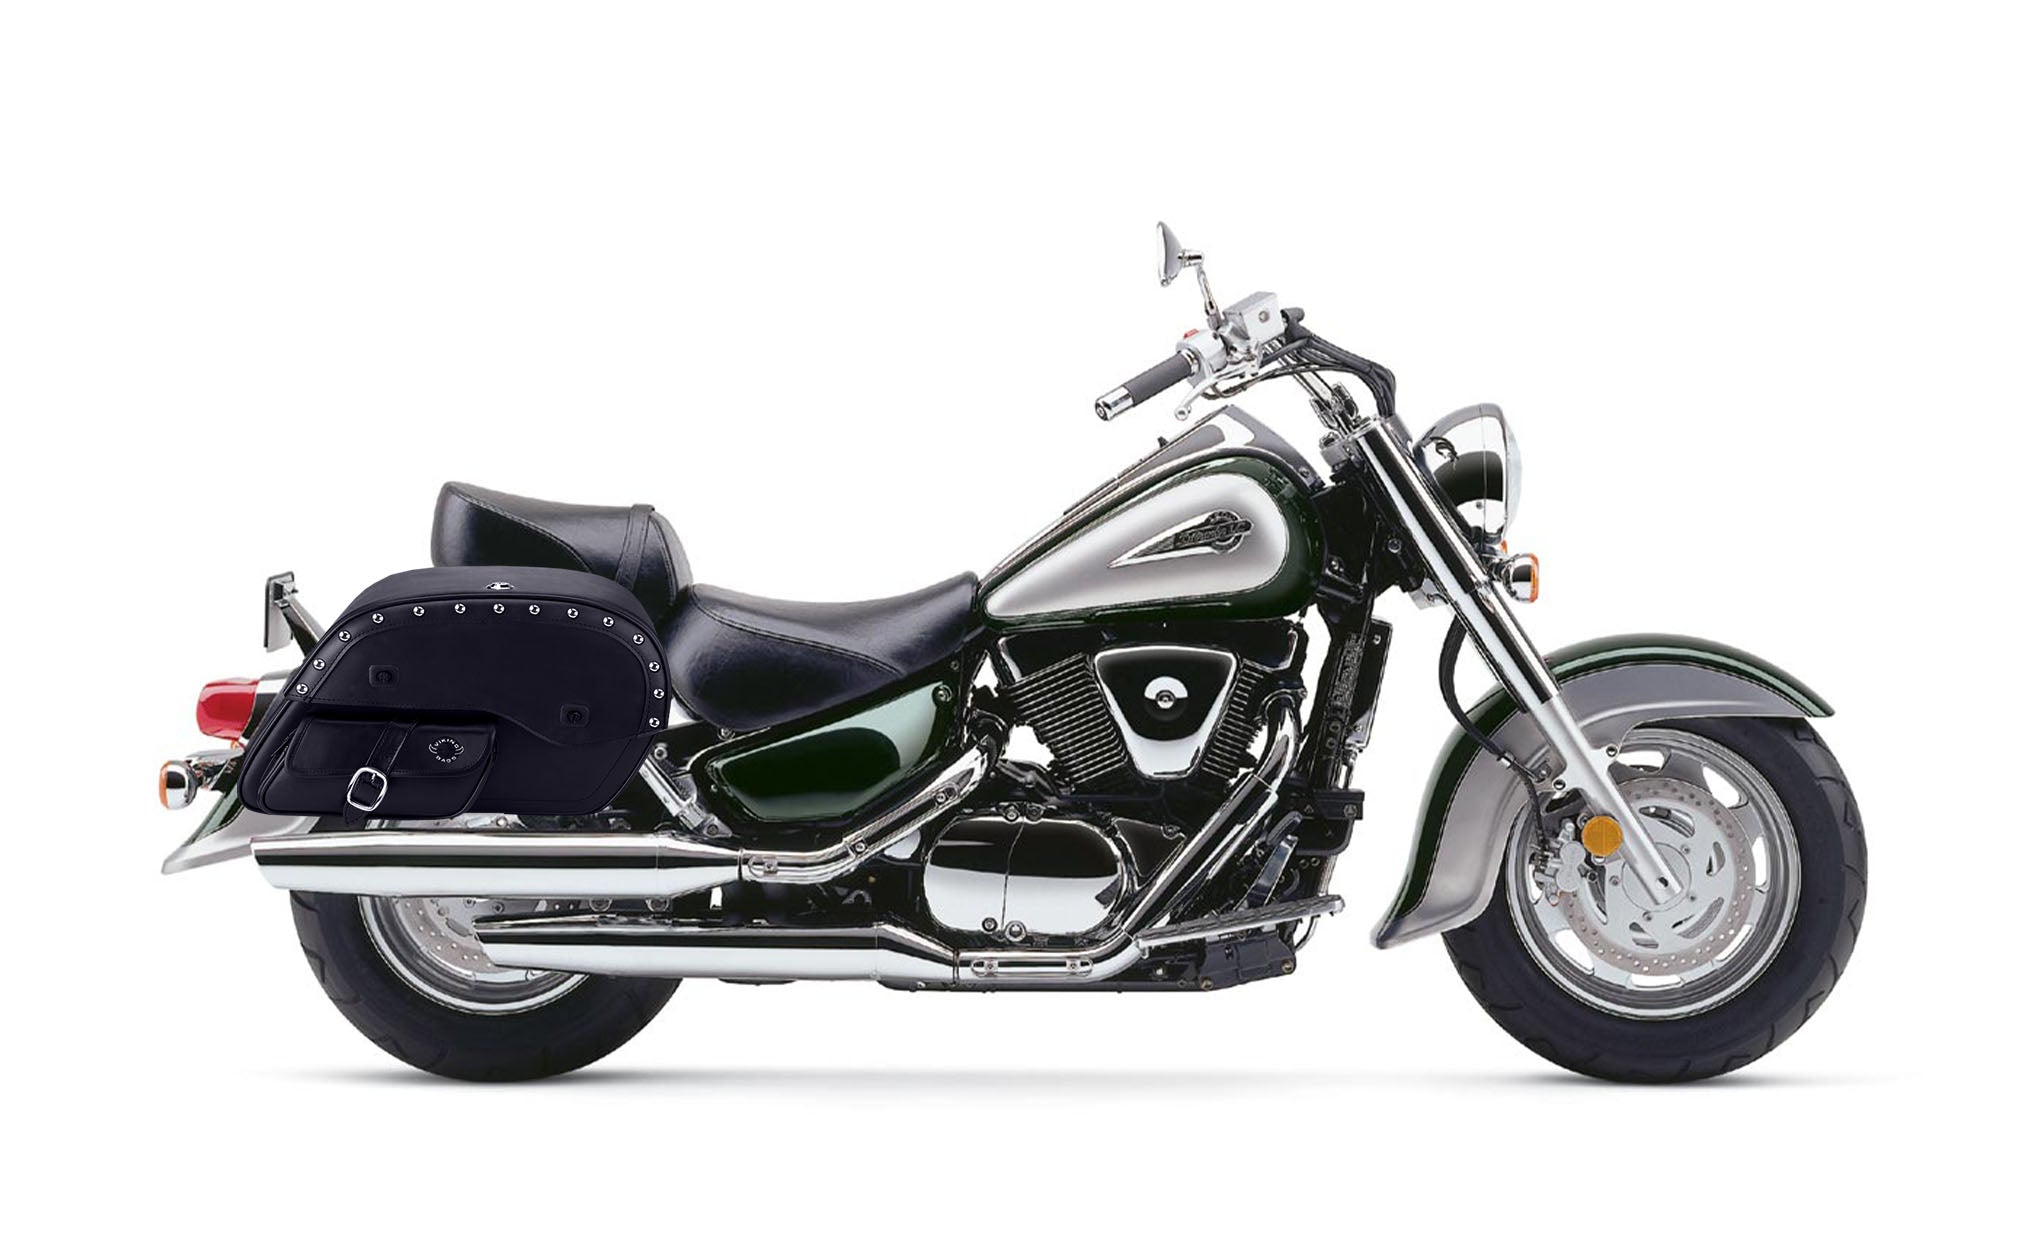 Viking Side Pocket Large Studded Suzuki Intruder 1500 Vl1500 Leather Motorcycle Saddlebags on Bike Photo @expand